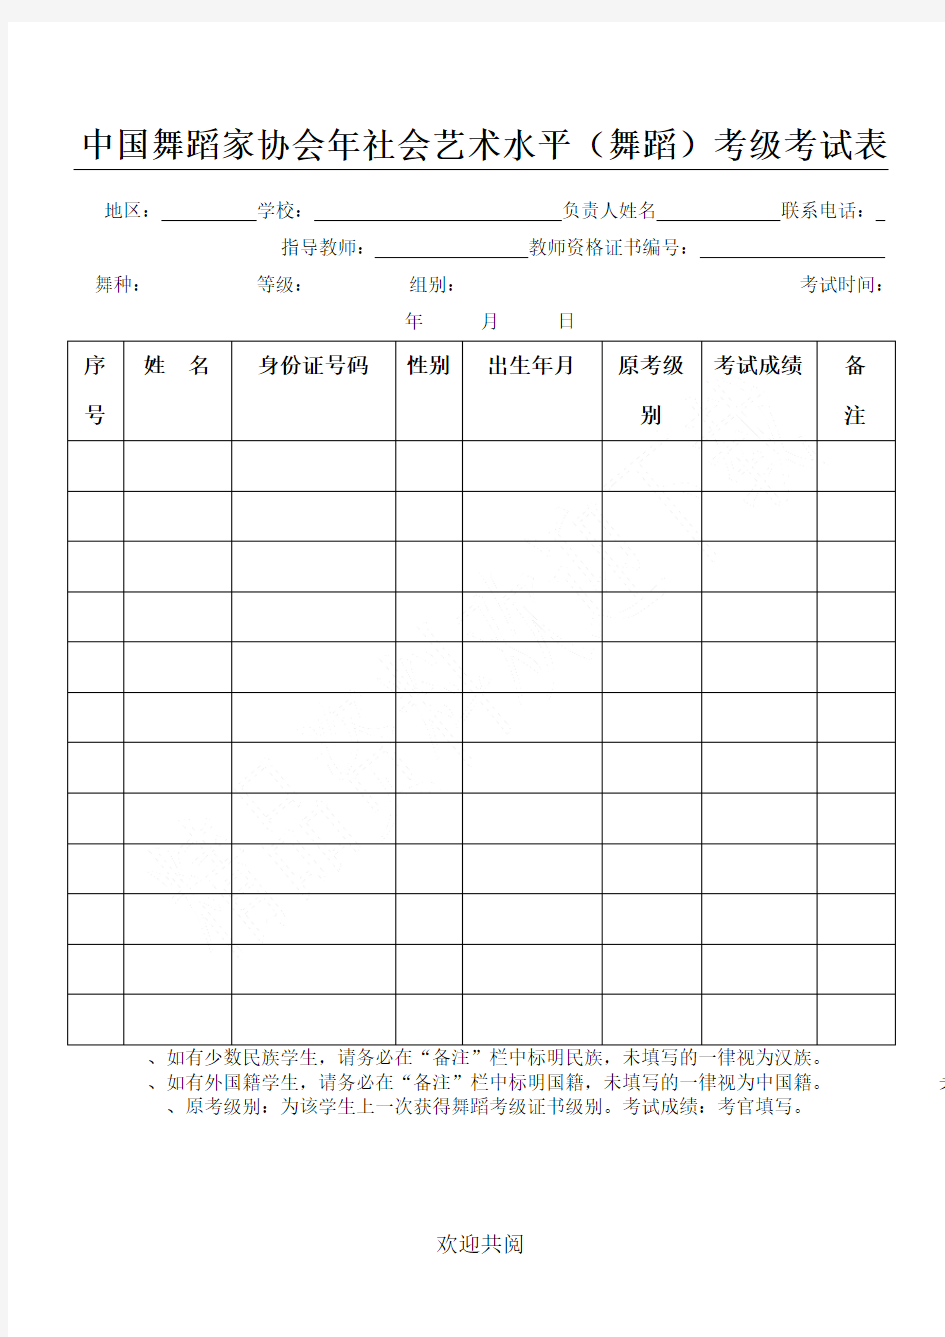 中国舞蹈家协会2019年社会艺术水平考级考试表格模板